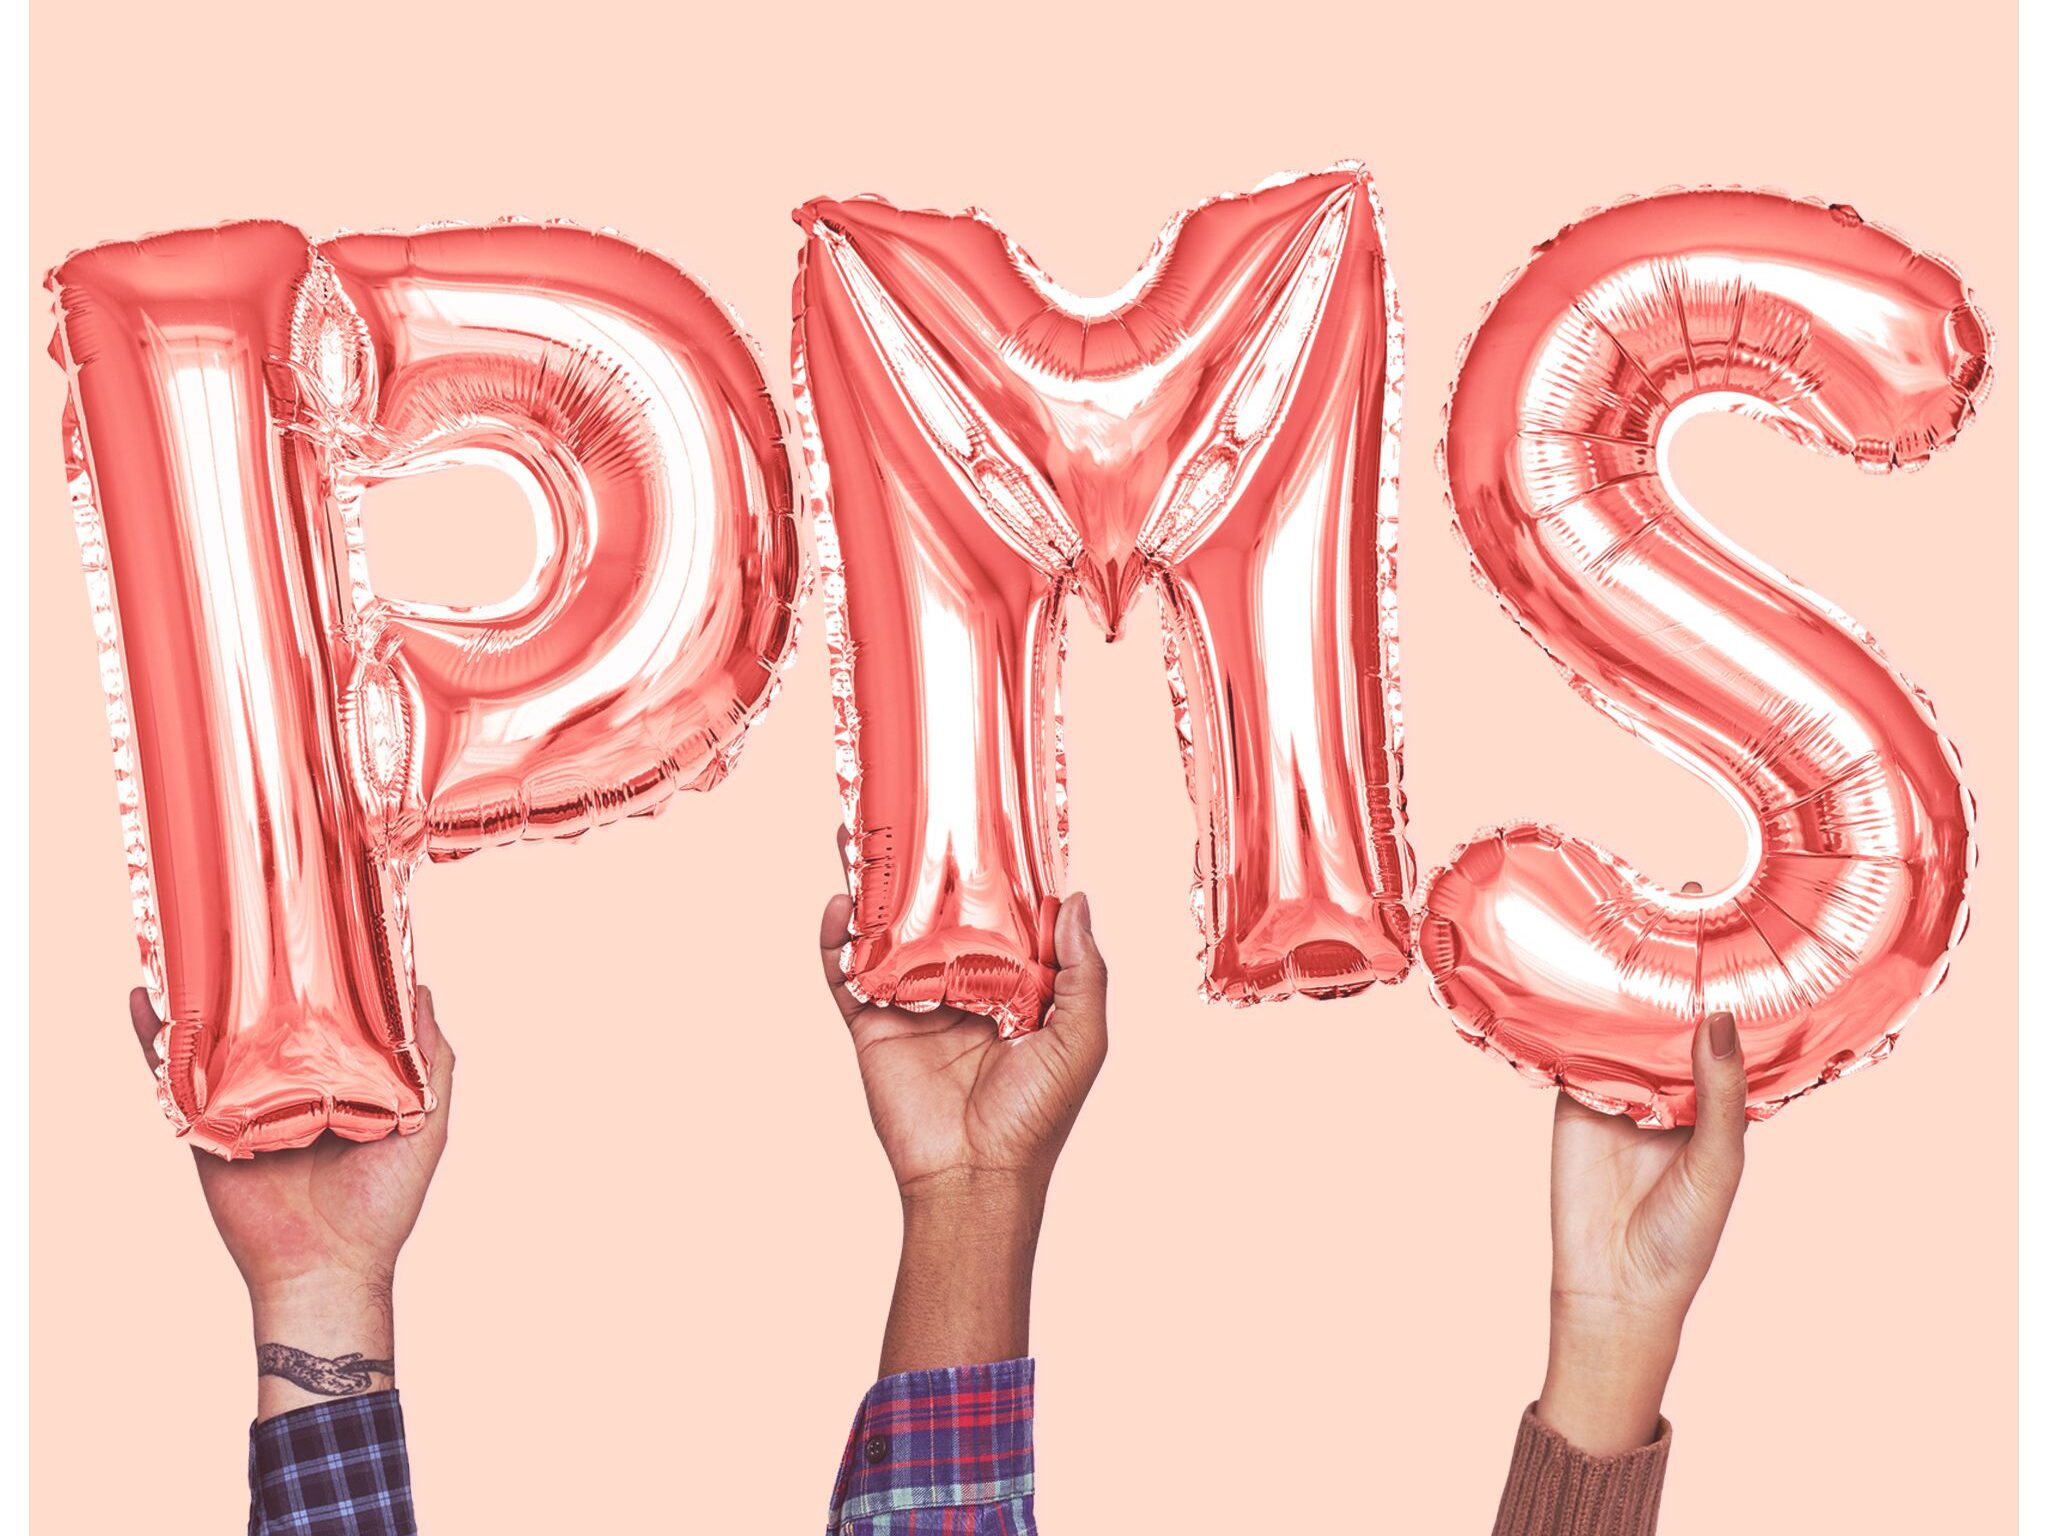 چه چیزی باعث به وجود آمدن سندرم قاعدگی PMS میشود؟/مقالات علمی/فروشگاه مسترآزما